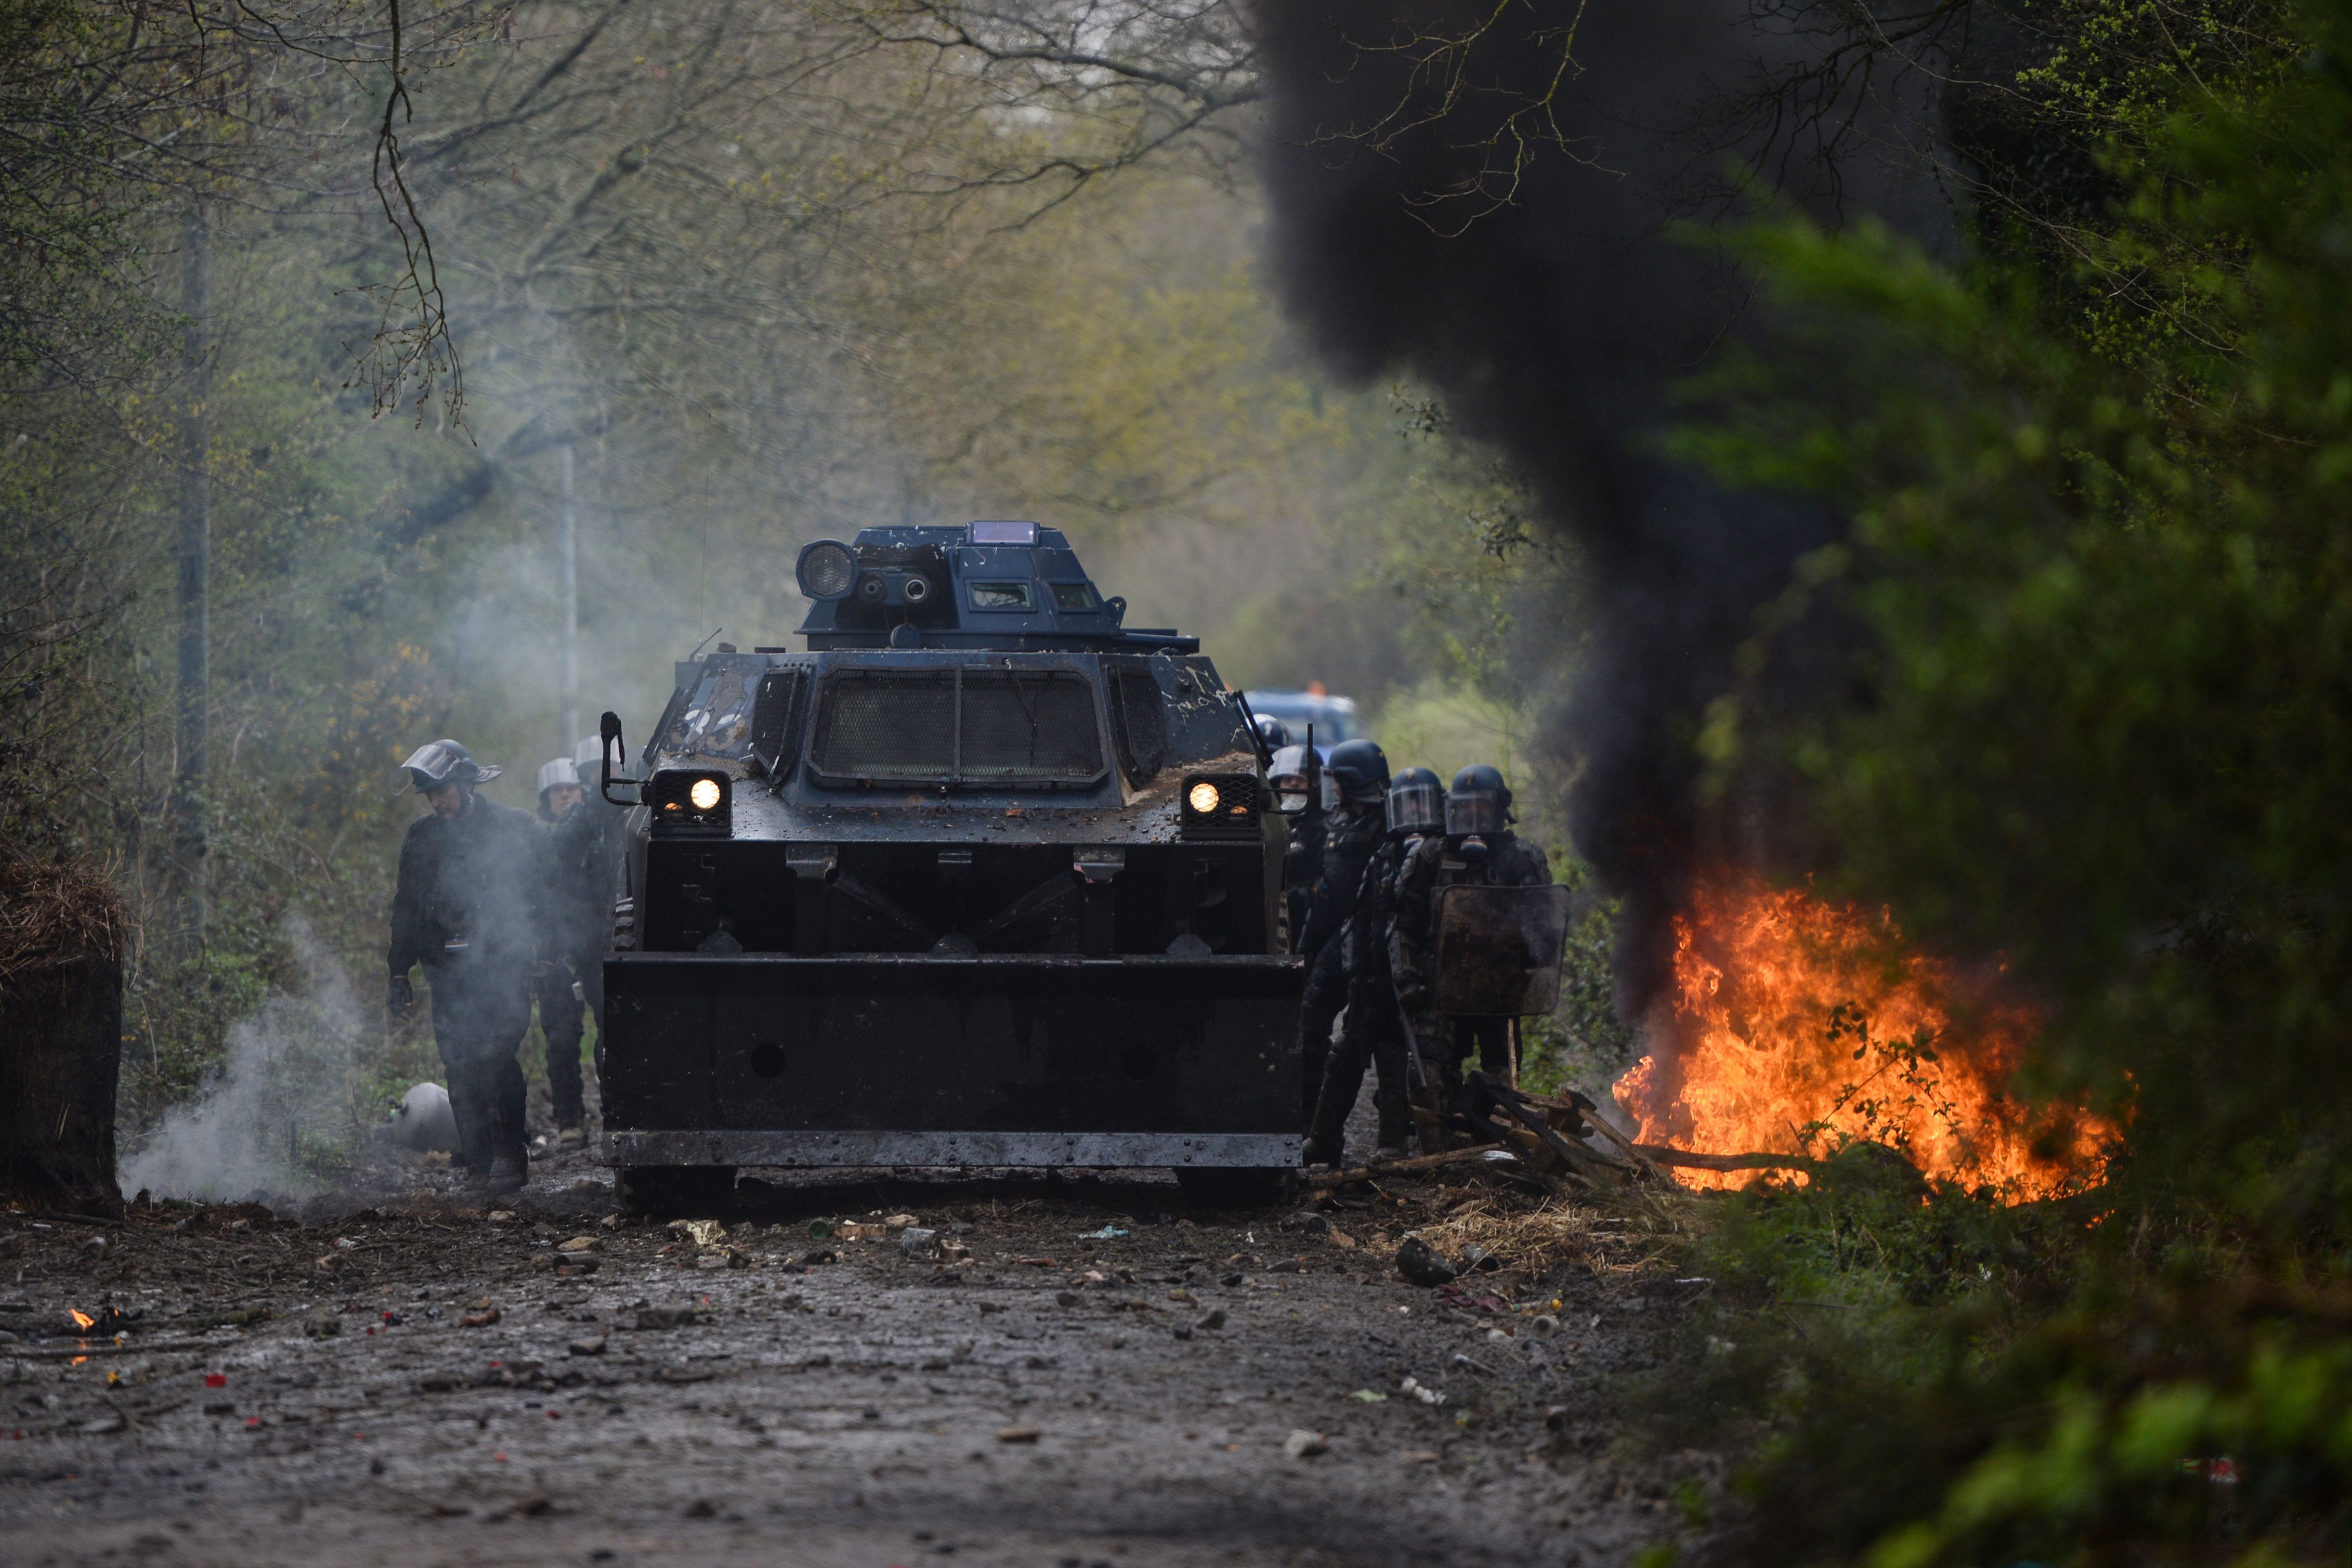 اشتباكات بين الشرطة الفرنسية ومتظاهرين